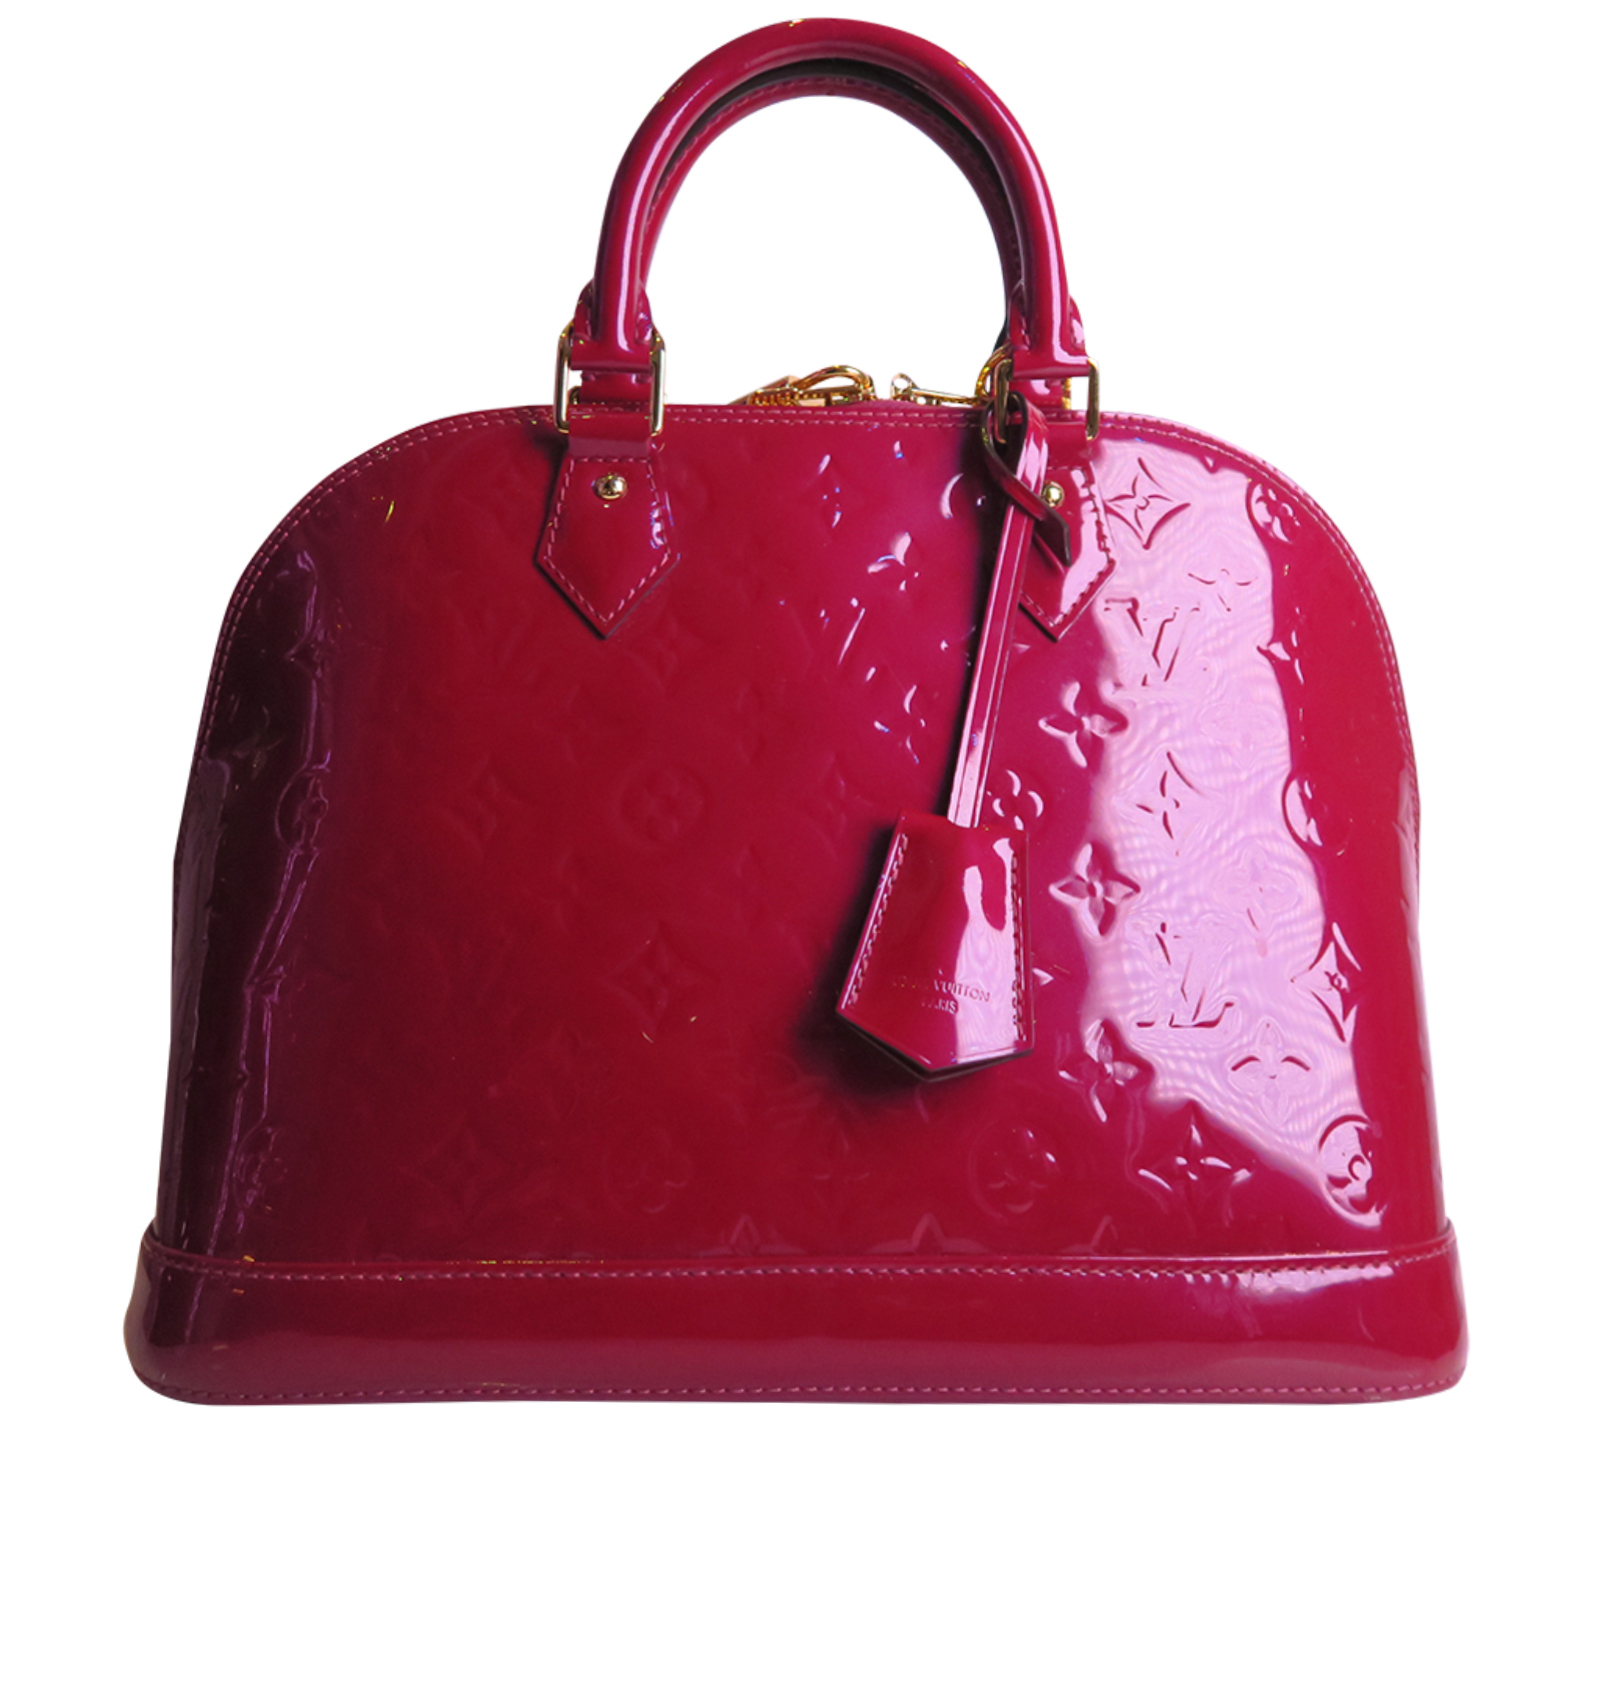 LV Alma PM 001-255-00008 - Luxury Pre-Loved Handbags, Lee Ann's Fine  Jewelry